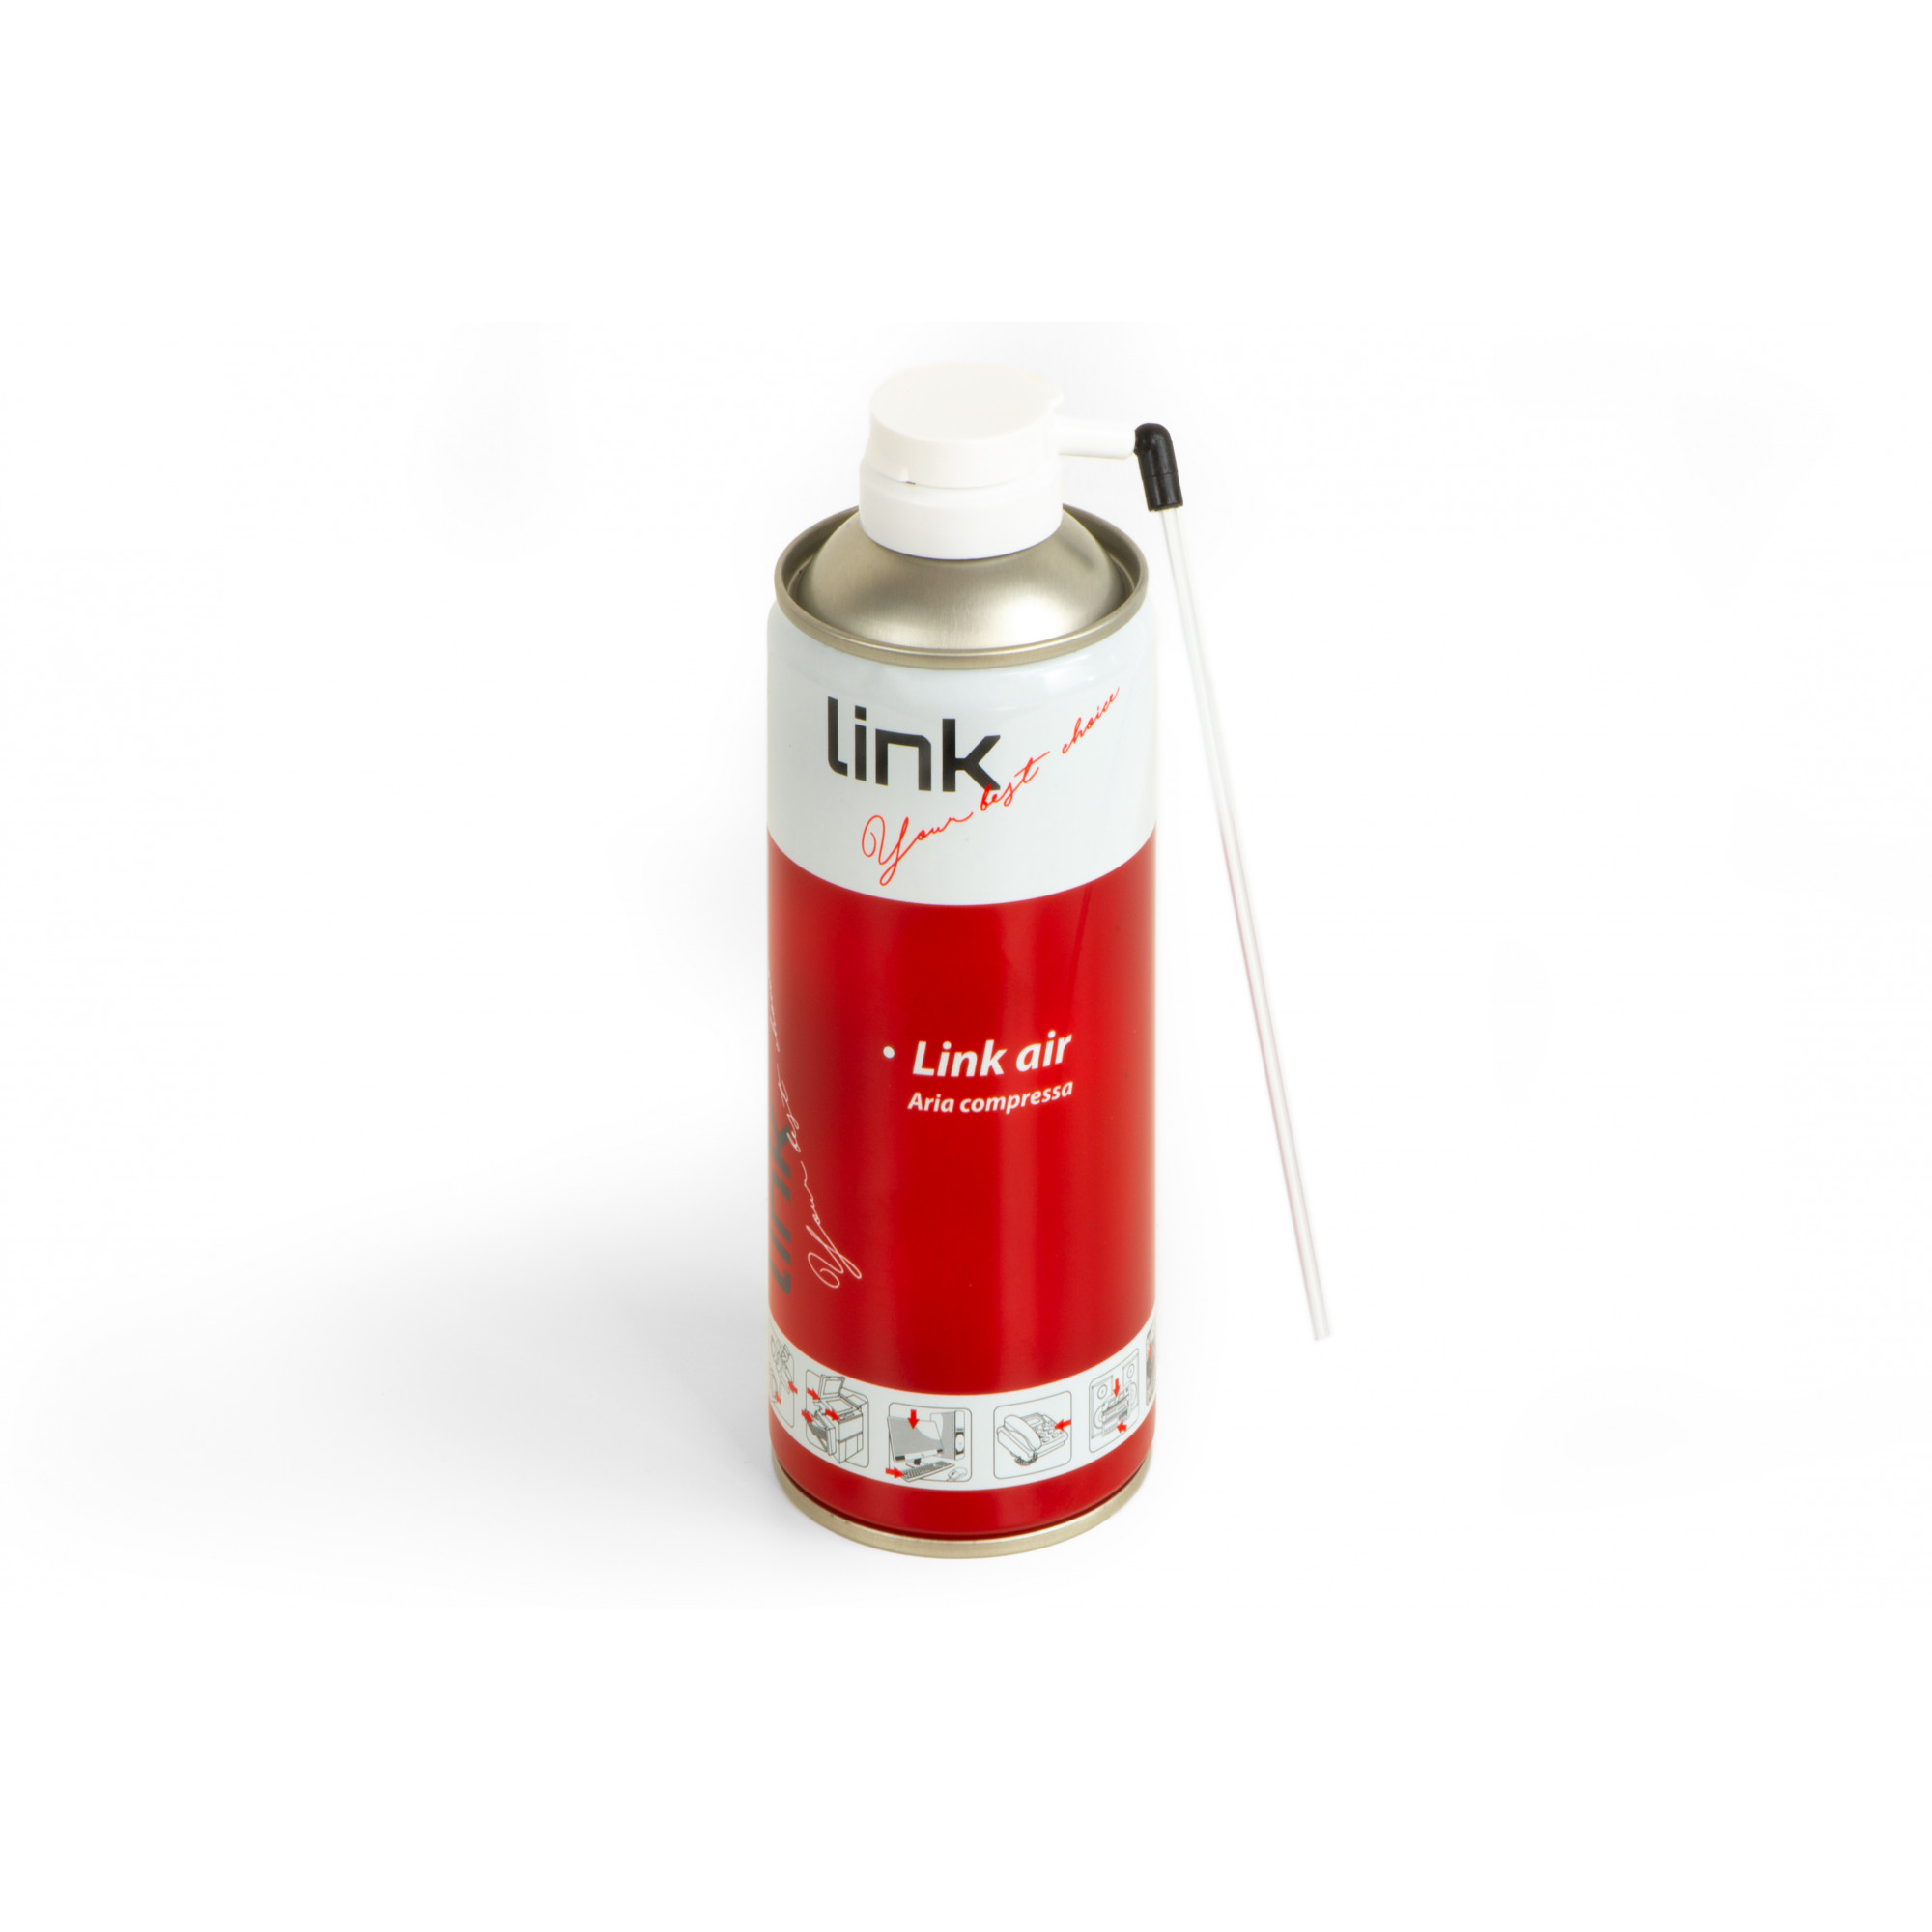 Spray Aria Compressa in Confezione 400 Ml. - Armadi Rack